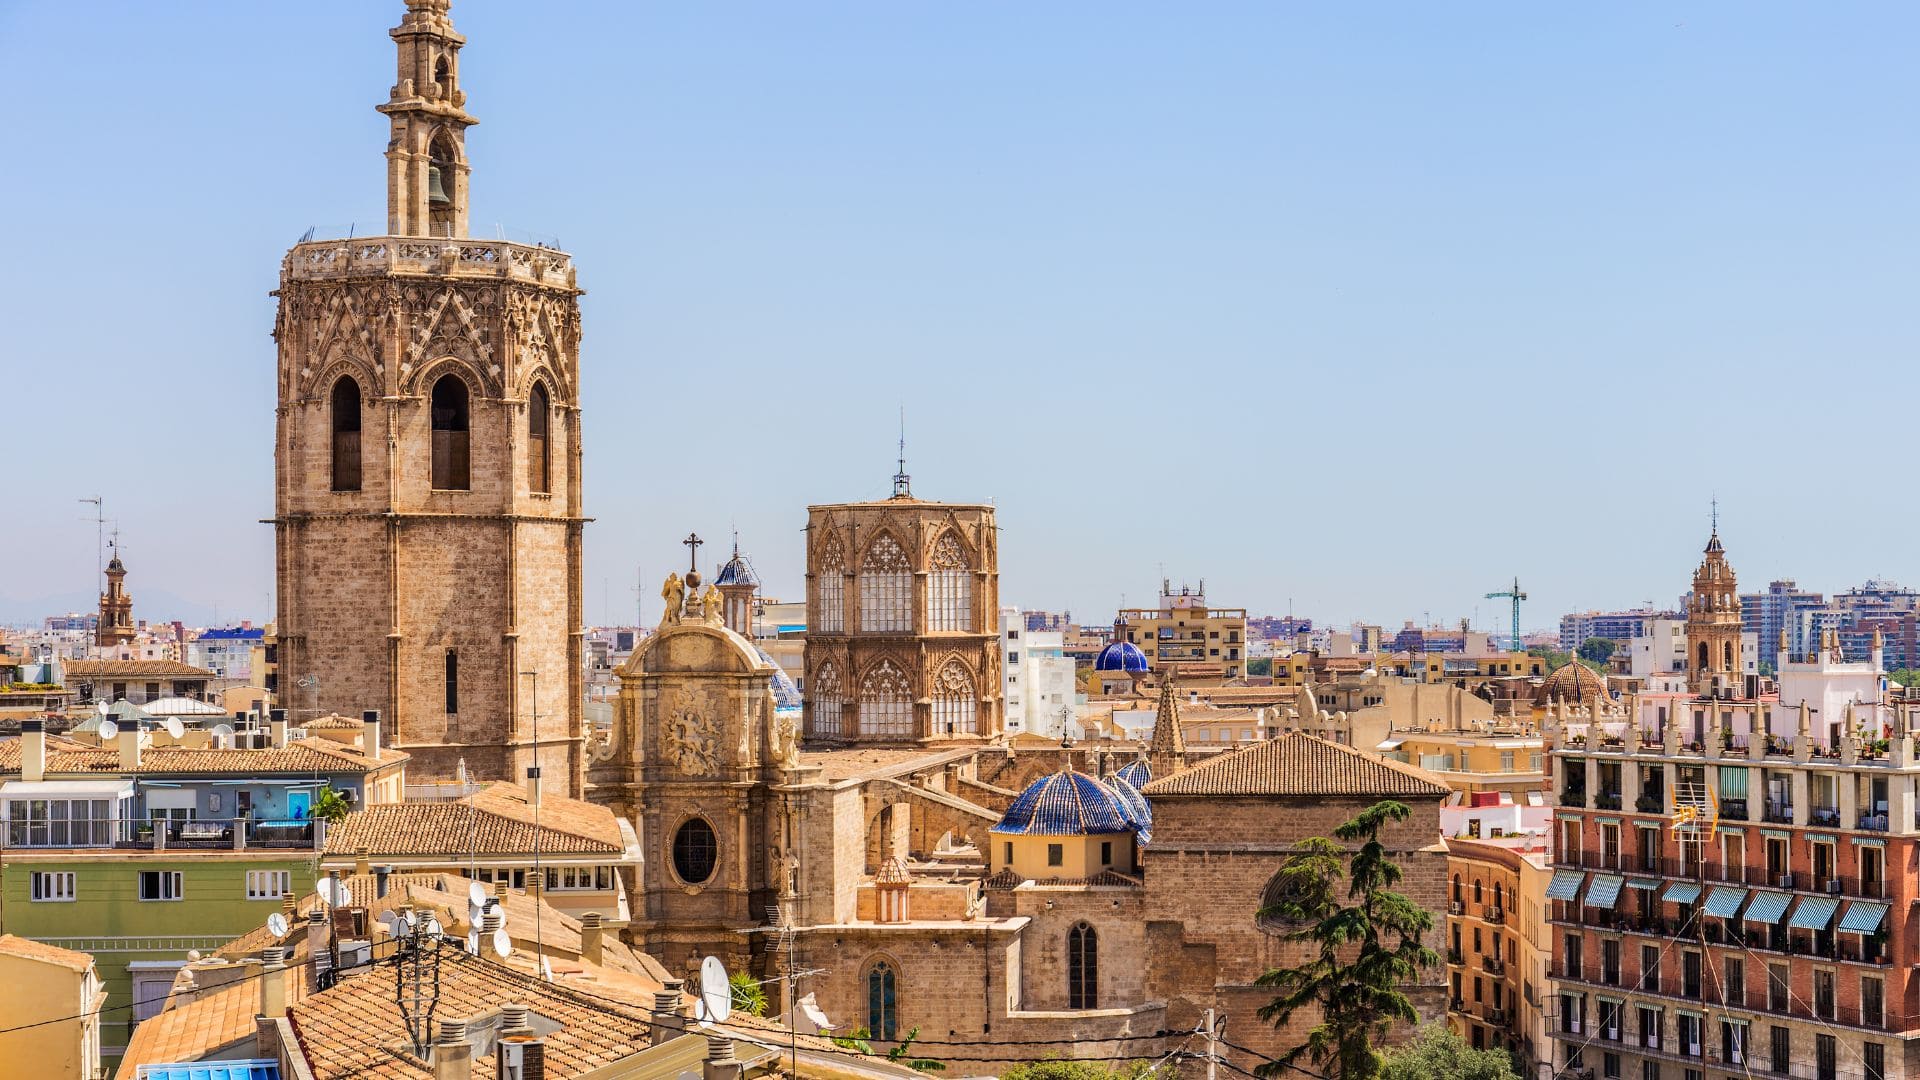 Viajes El Corte Inglés ofrece visita a Valencia desde 125 euros